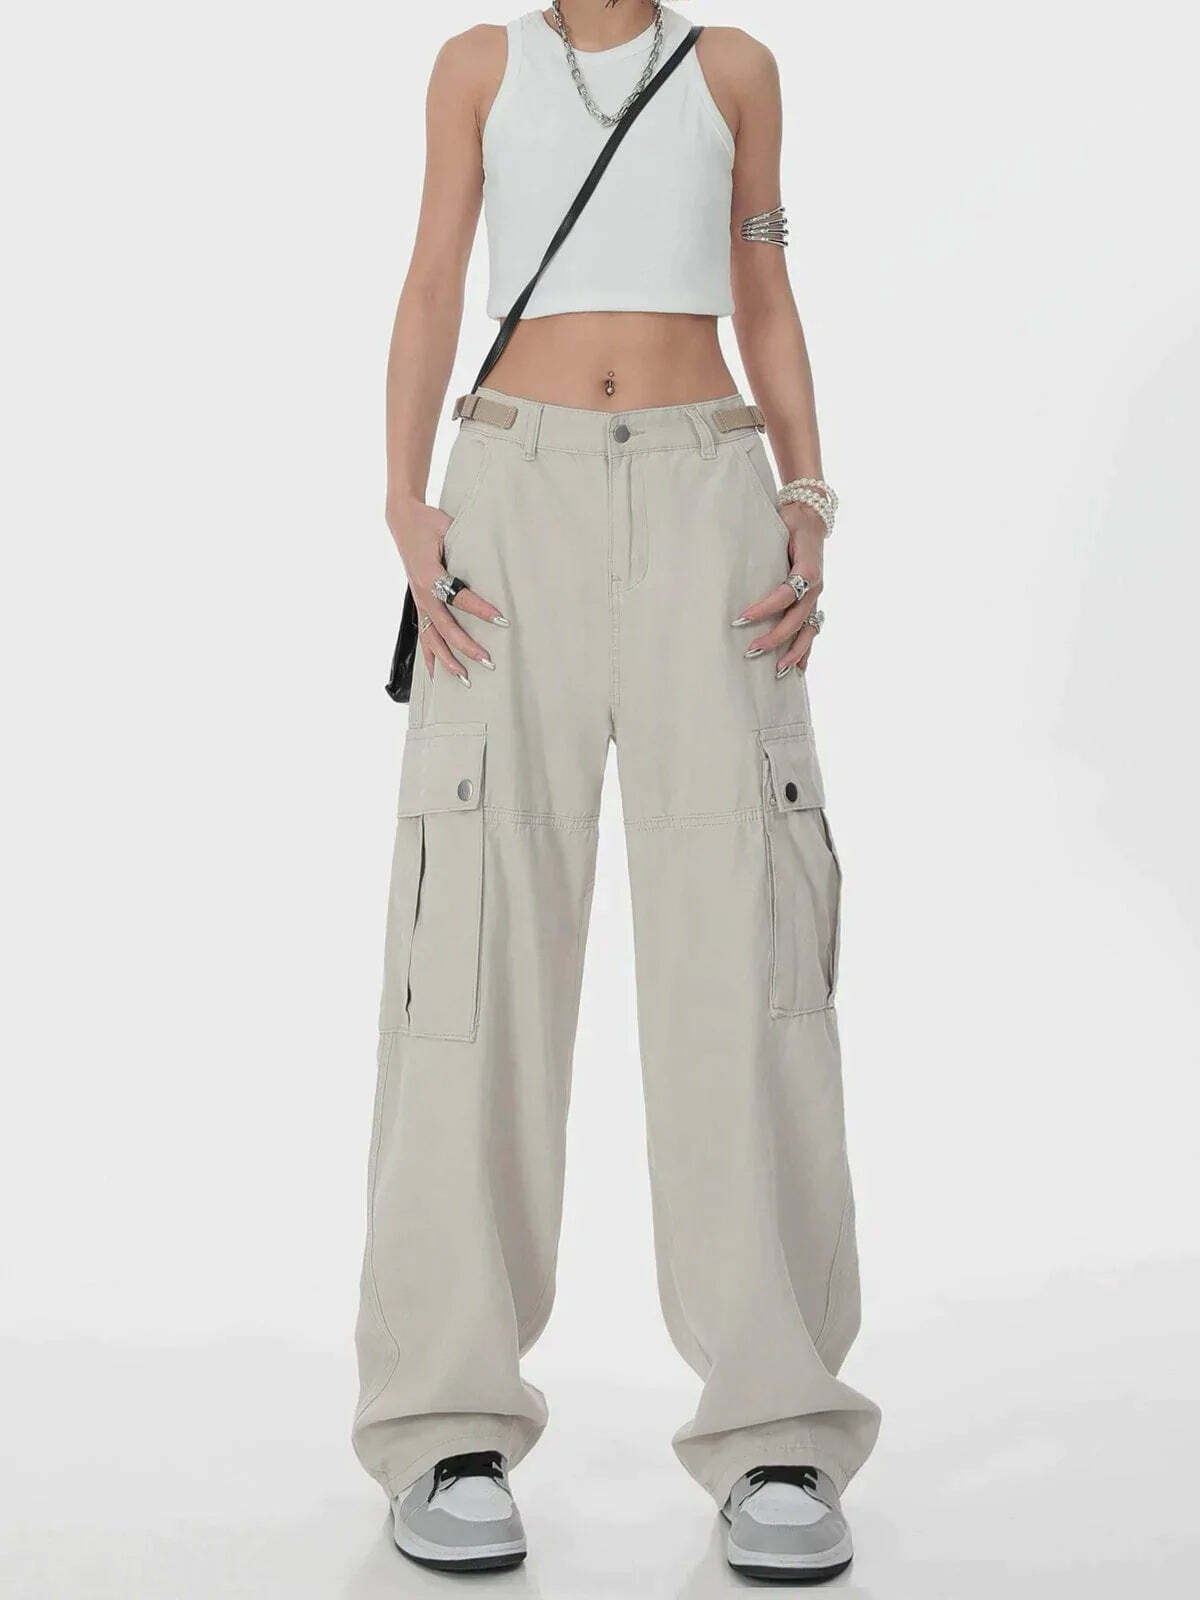 y2k cargo pants urban streetwear essential 5541